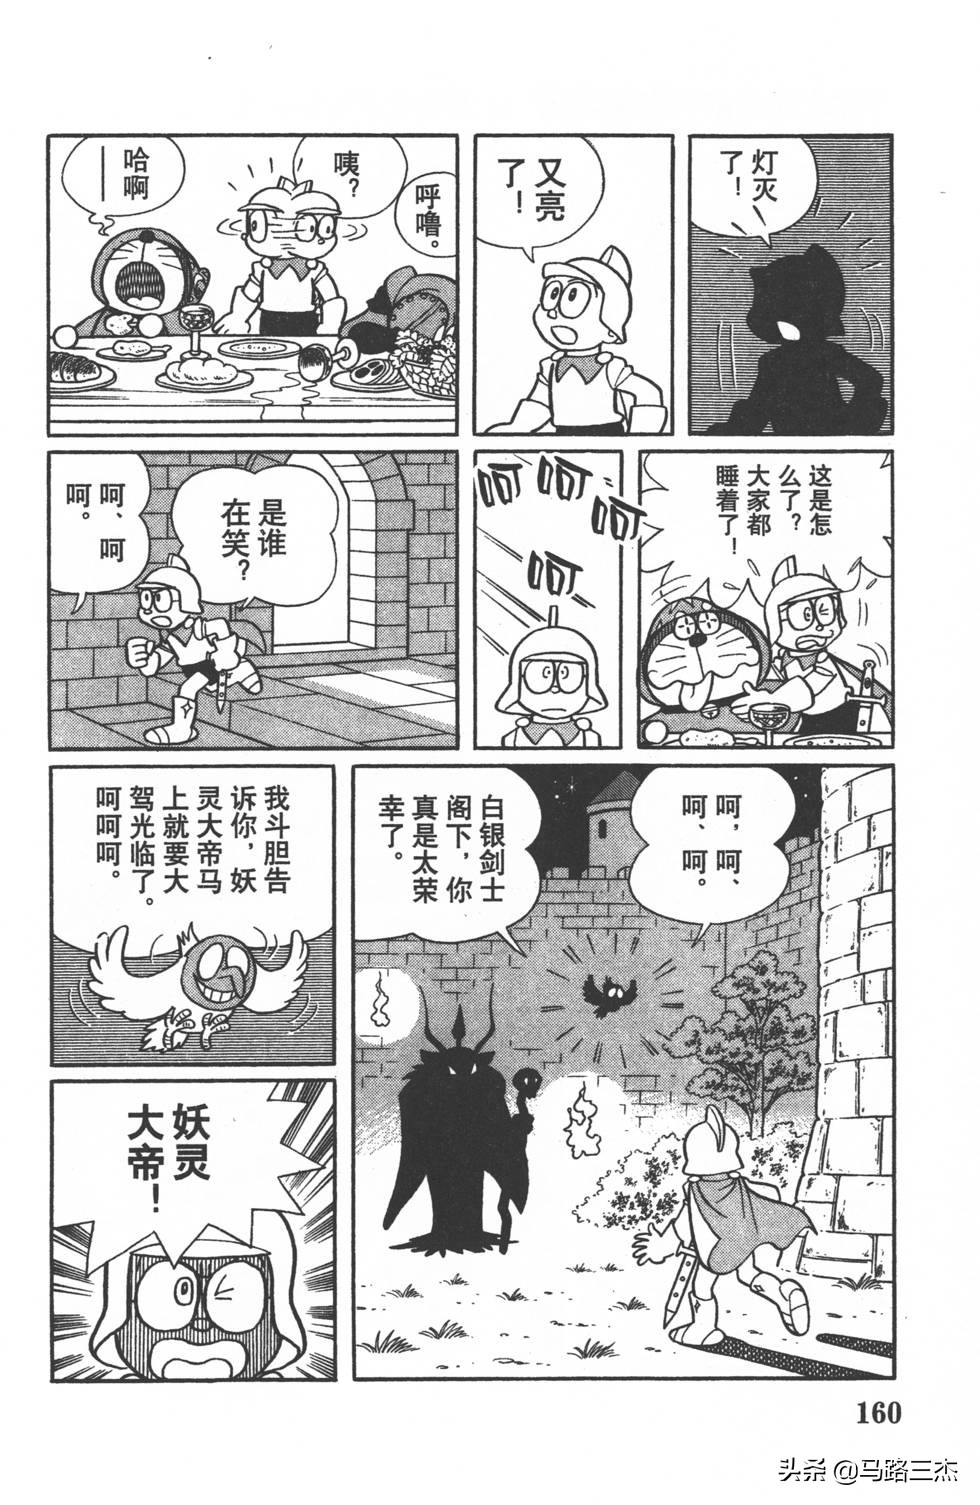 经典漫画_哆啦A梦_大长篇_第14卷_大雄与梦幻三剑士